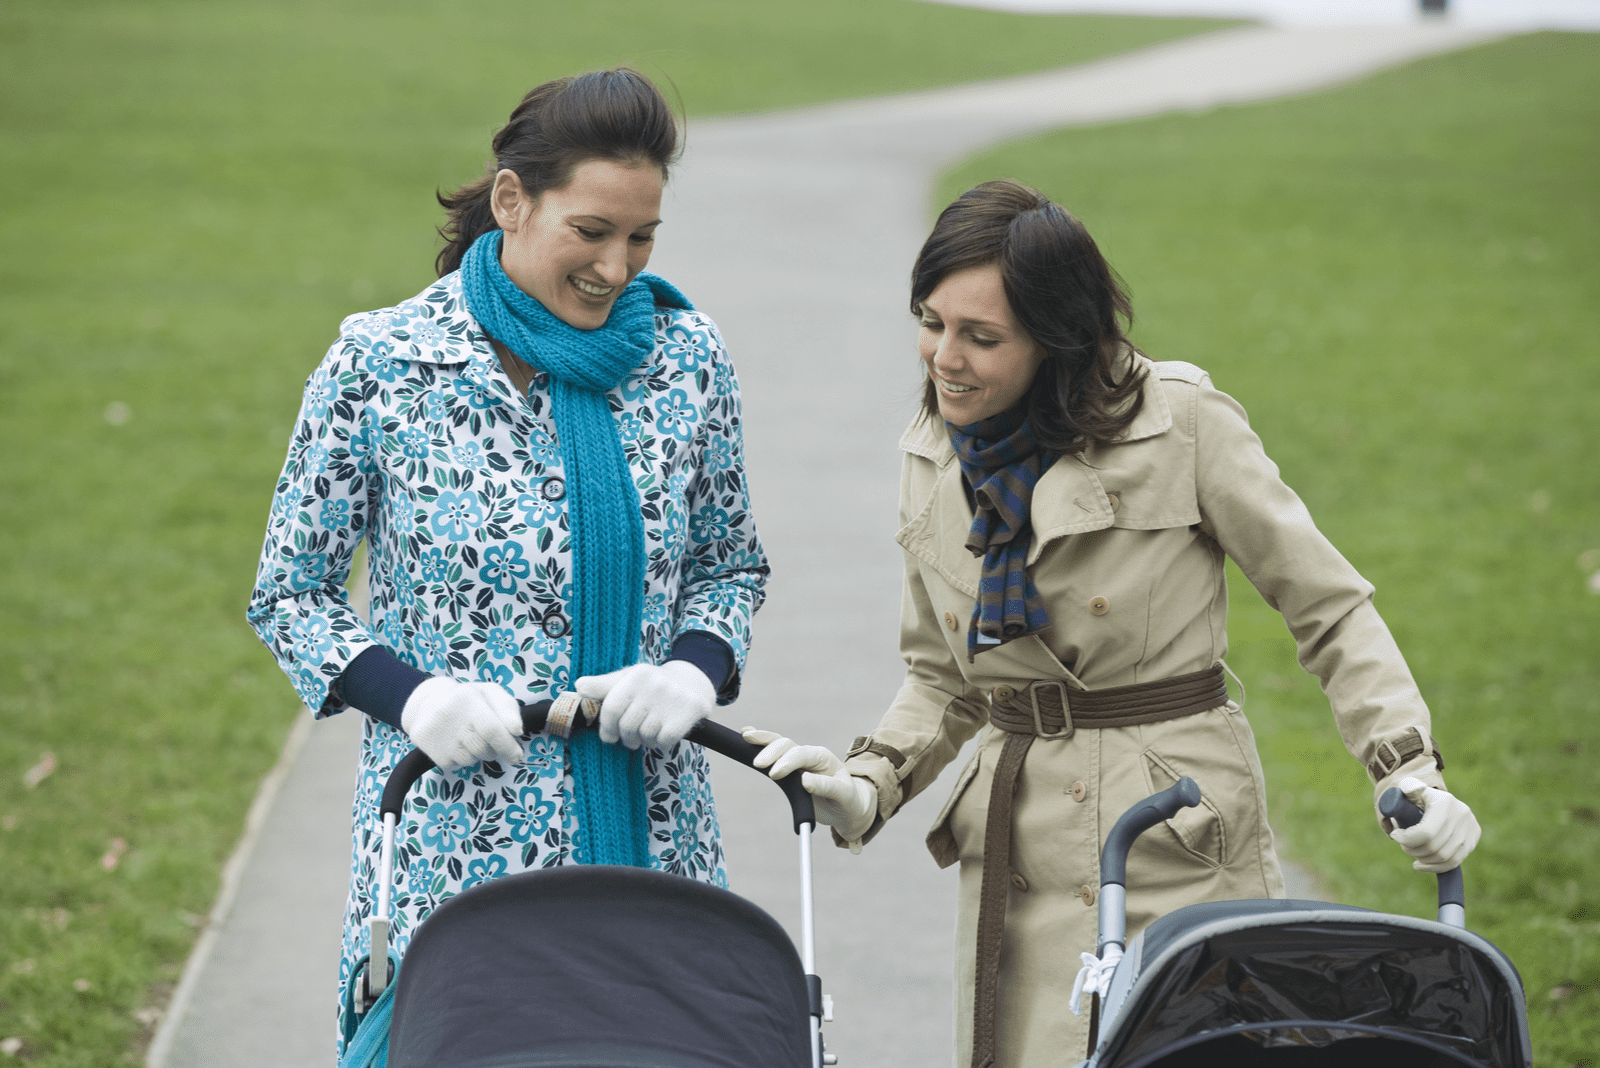 deux femmes marchant dans le parc conduisant des enfants en fauteuil roulant